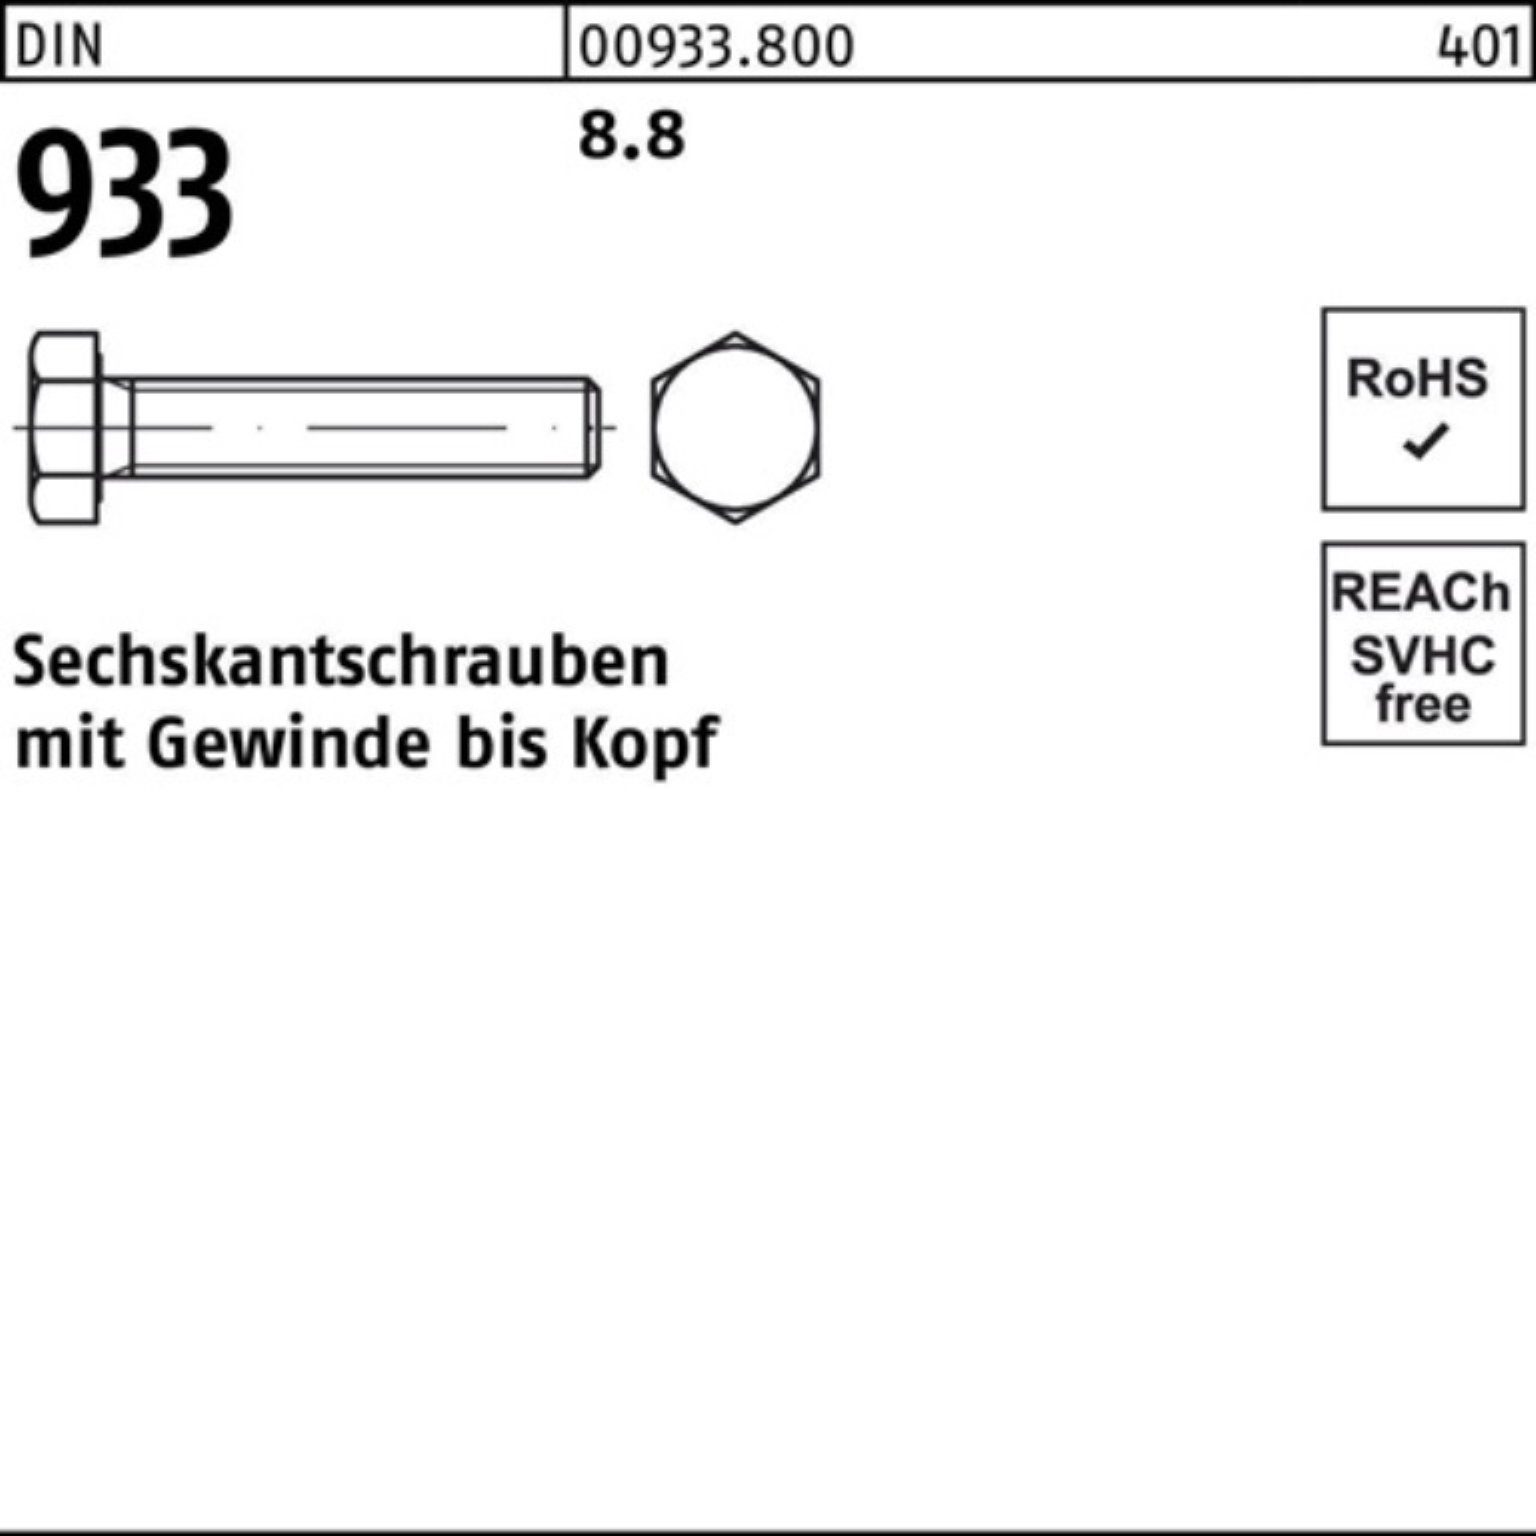 Pack 933 Sechskantschraube DIN Reyher 18 Sechskantschraube Stück 8.8 500 933 M4x 500er VG DIN